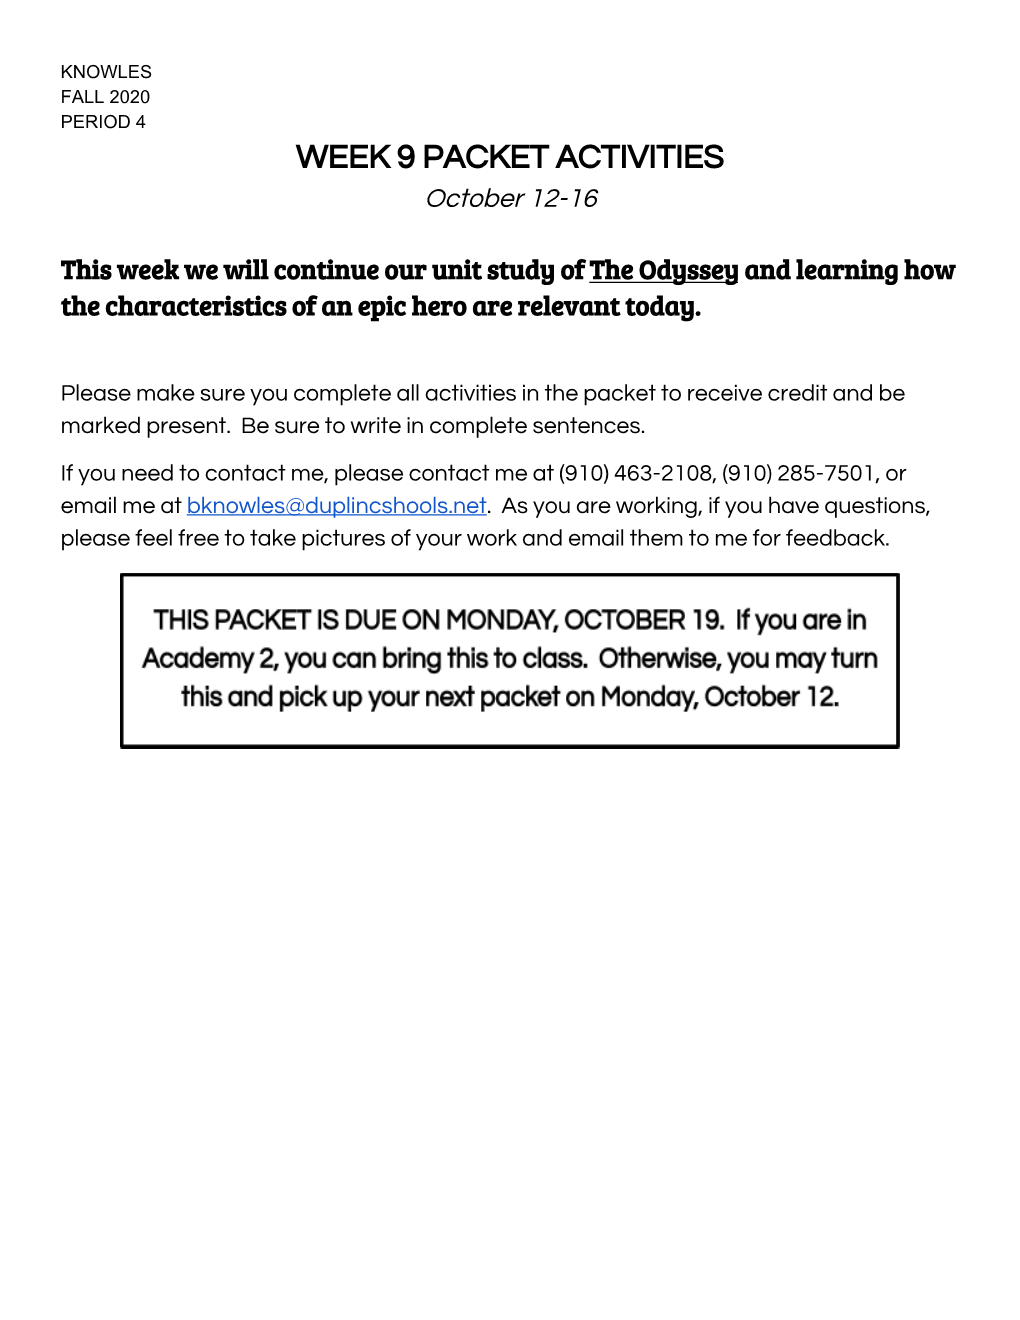 WEEK 9 PACKET ACTIVITIES October 12-16